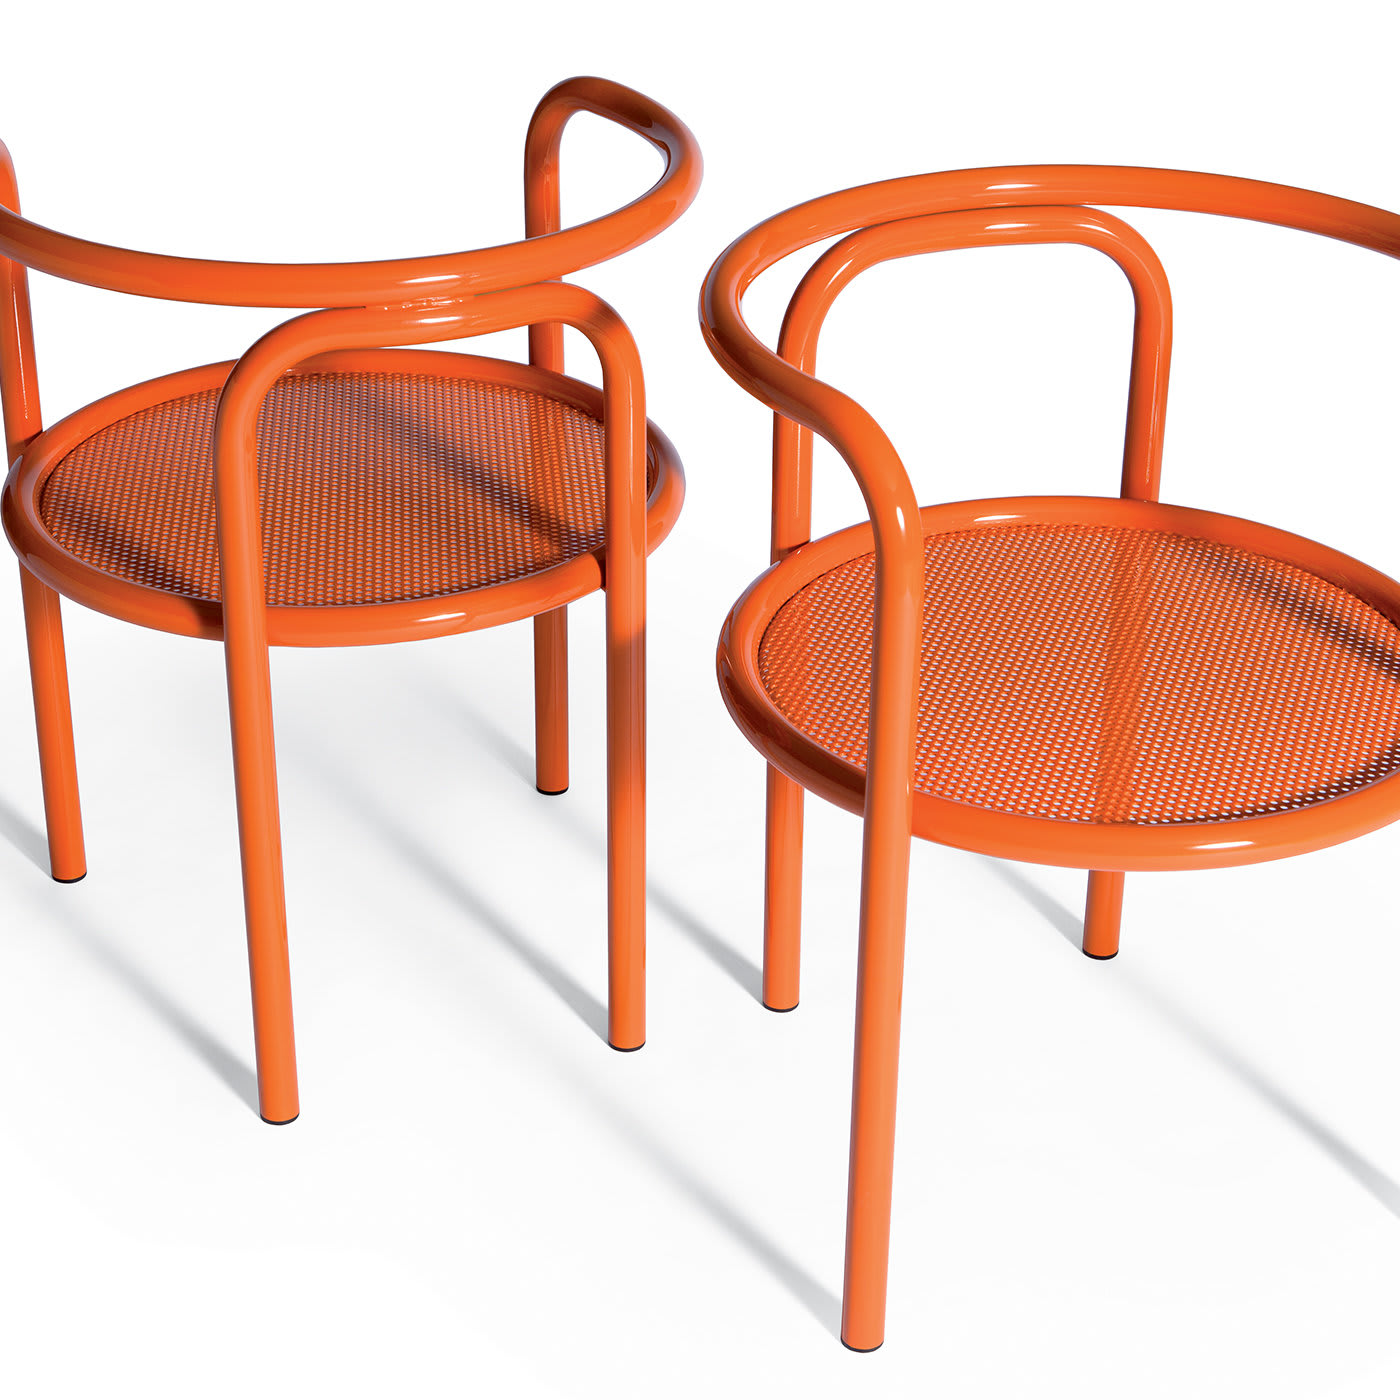 Locus Solus Orange Chair by Gae Aulenti - Exteta